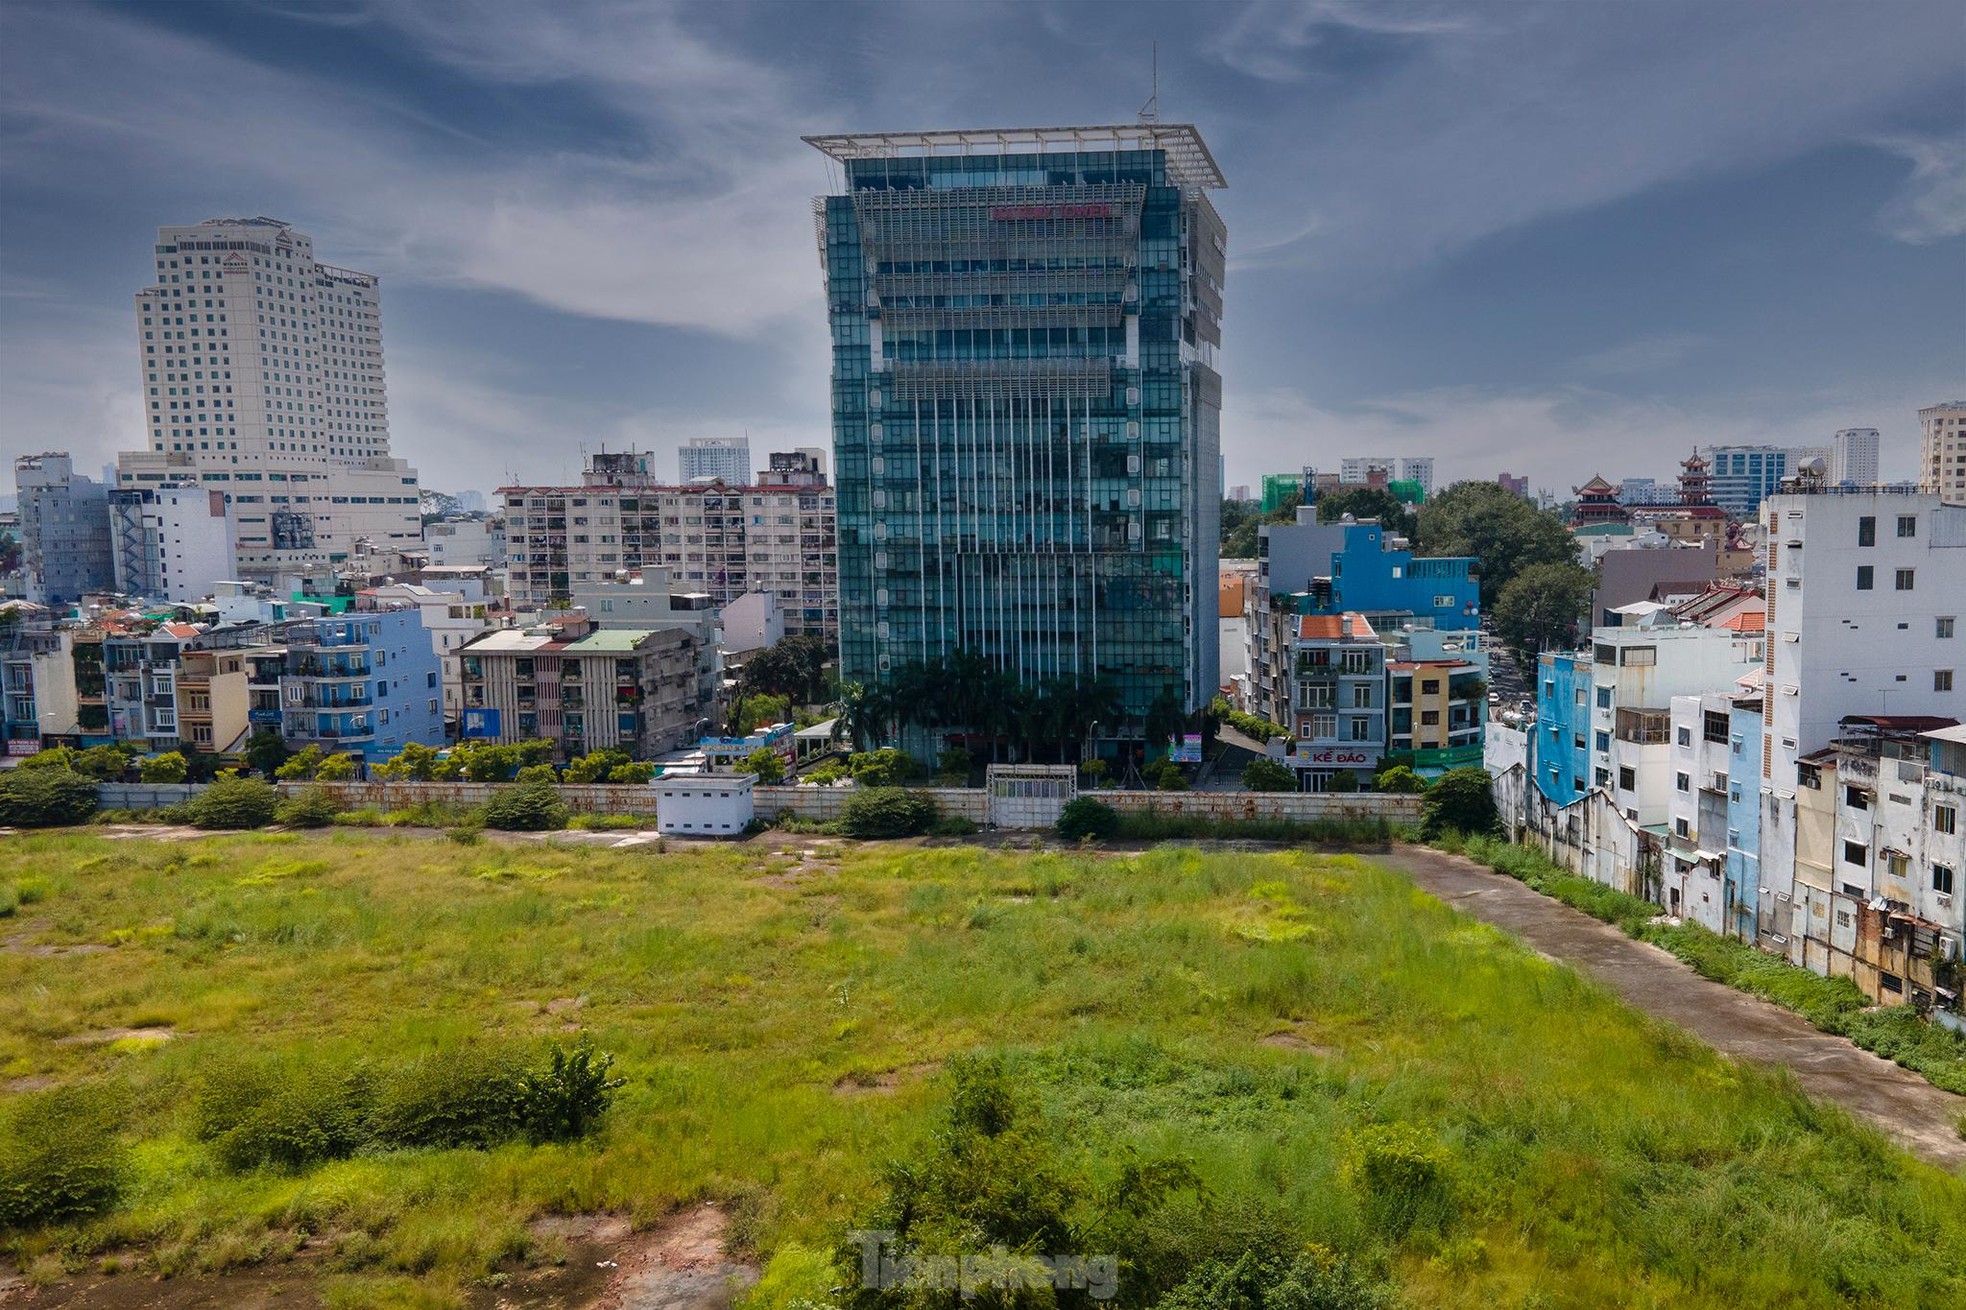 Cận cảnh khu đất 30.000 m2 do Tổng công ty Thuốc lá Việt Nam chuyển nhượng khi chưa được phép của Thủ tướng Chính phủ Ảnh 8